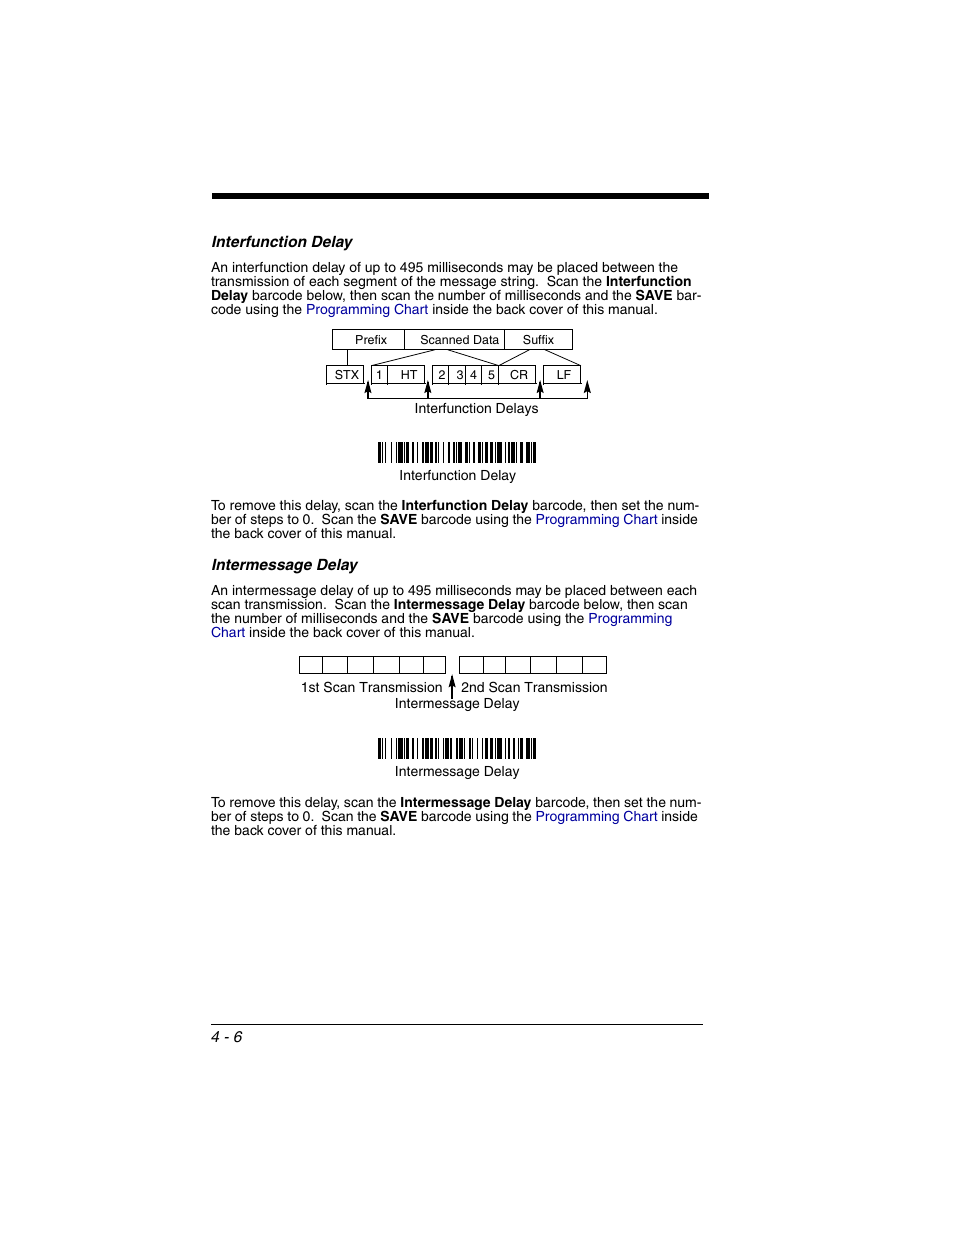 Interfunction delay, Intermessage delay, Interfunction delay -6 intermessage delay -6 | Honeywell 2020 User Manual | Page 82 / 188